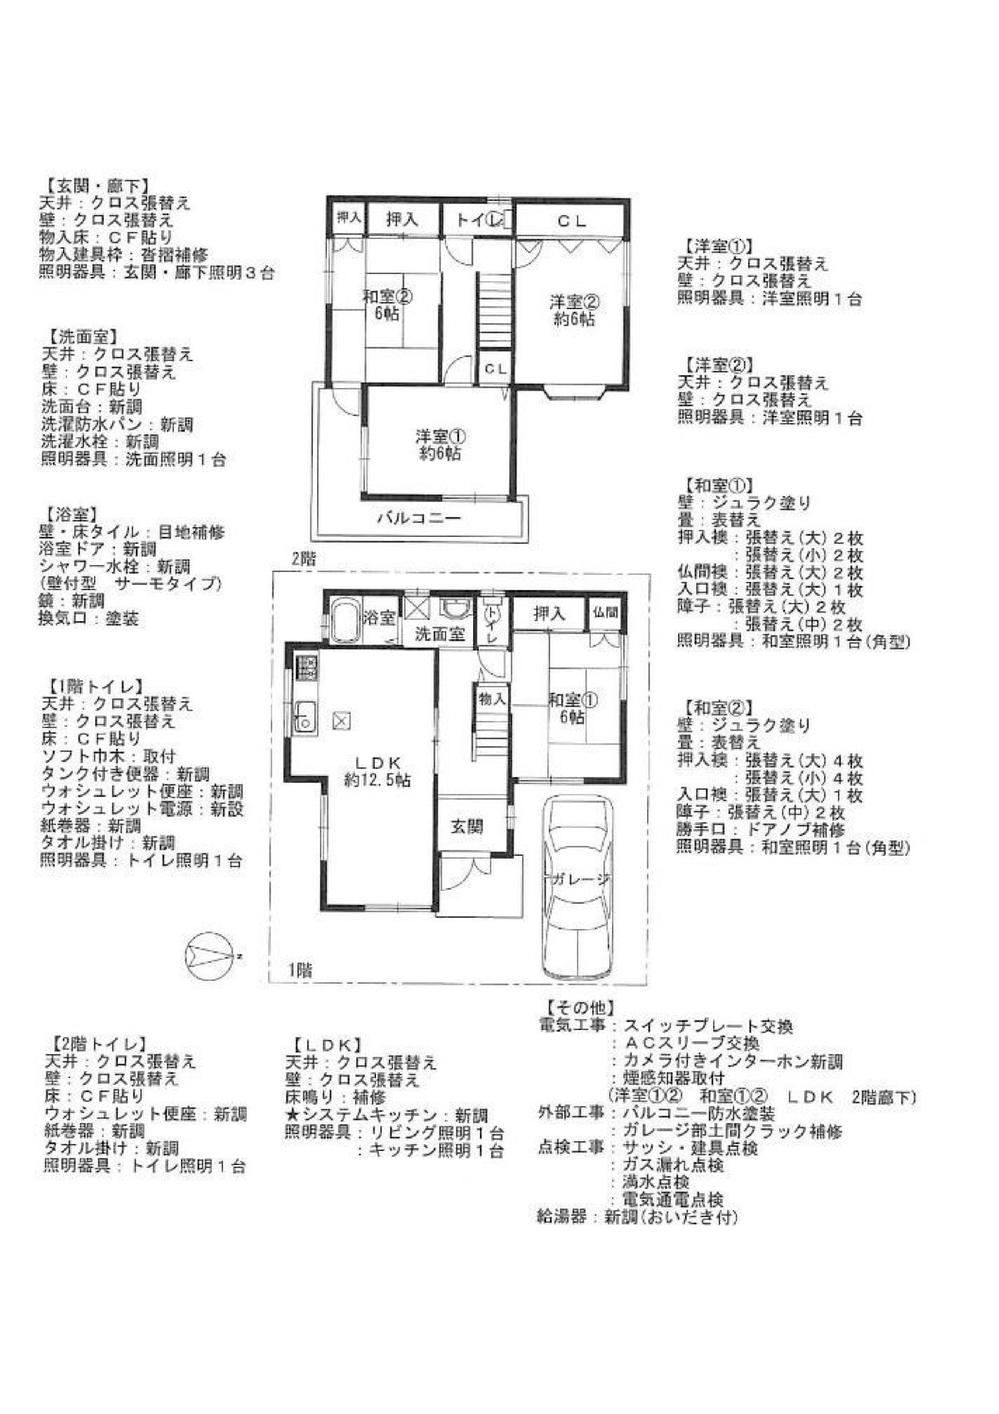 Floor plan. 21.3 million yen, 4LDK, Land area 100 sq m , Building area 89.1 sq m